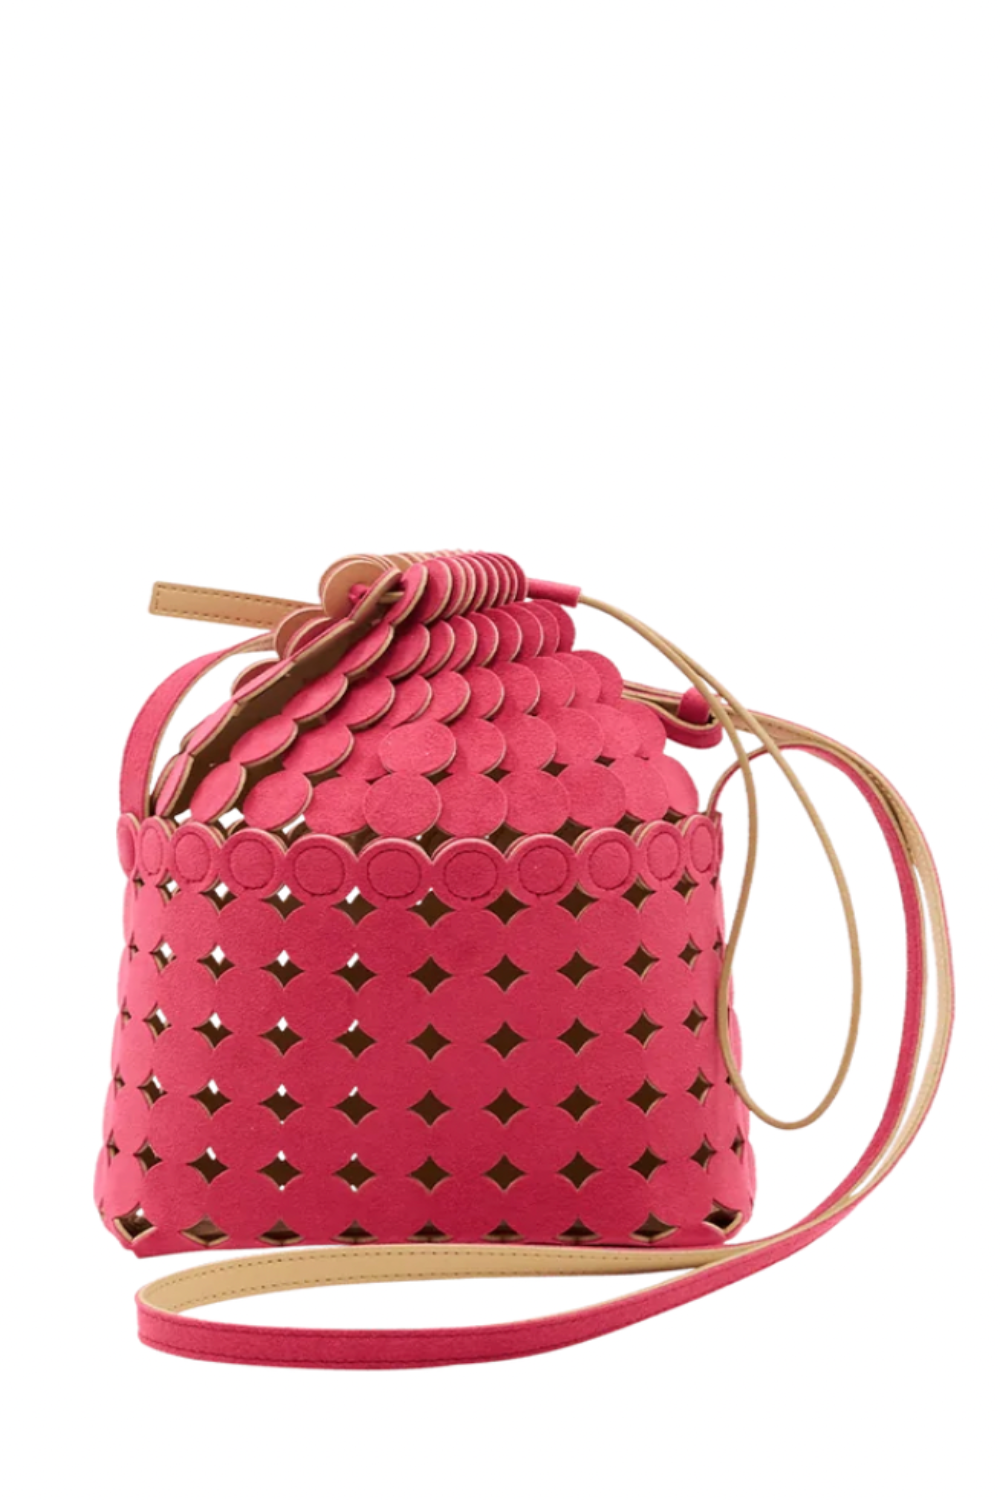 Mary Al Terna - Moon Shoulder Bag: Pink